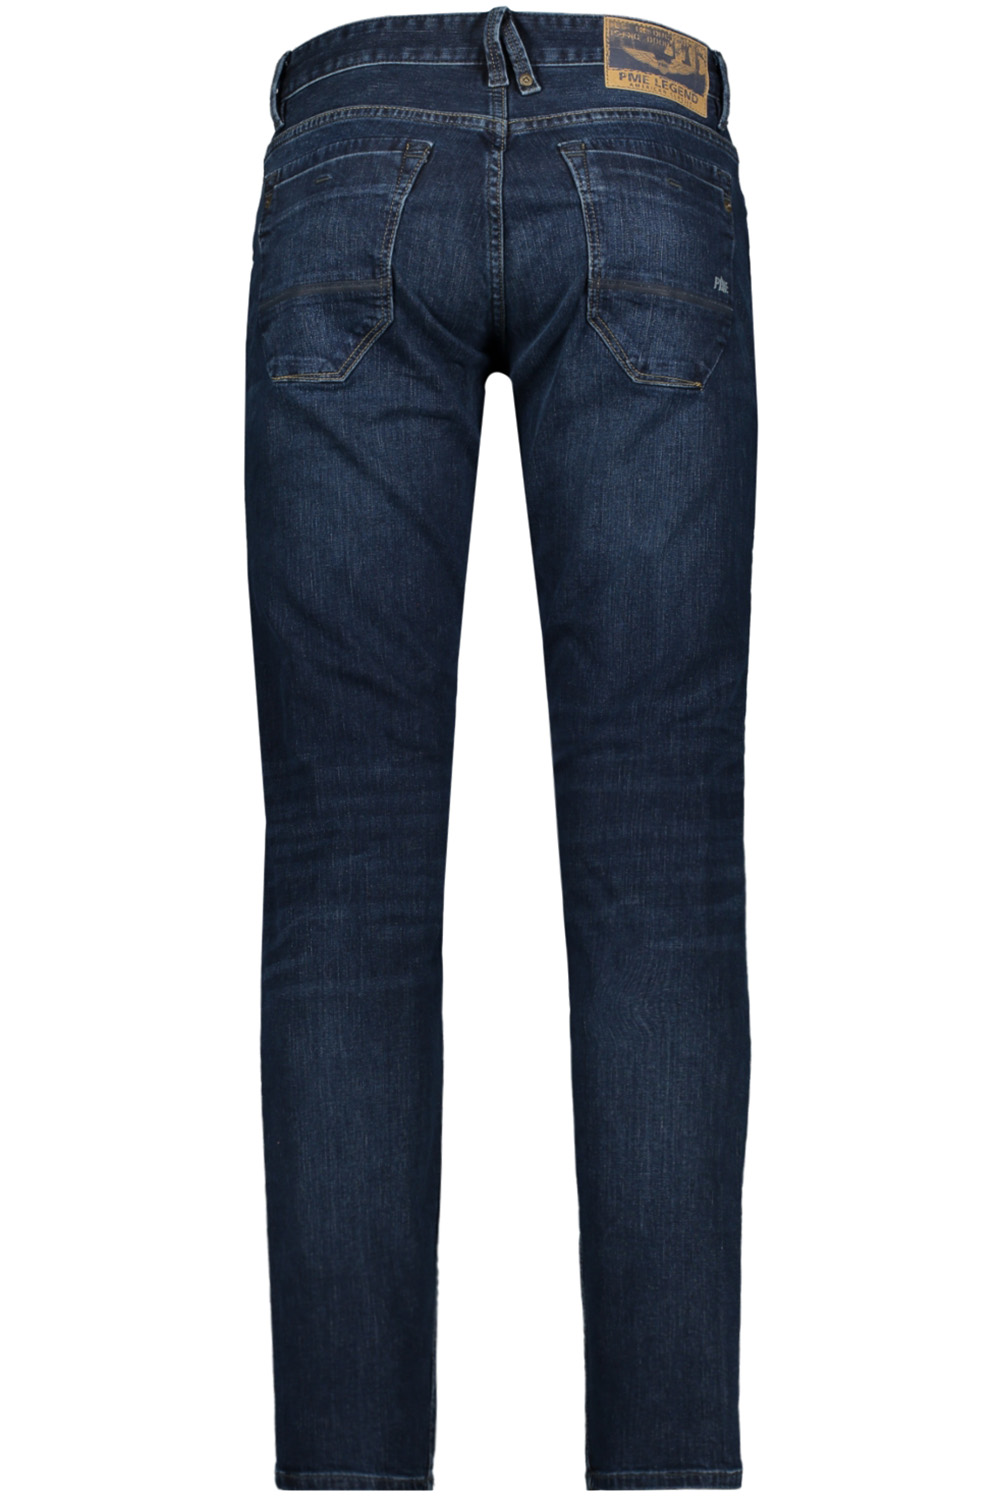 Verzamelen verzoek wenselijk skymaster ptr650 pme legend jeans diw